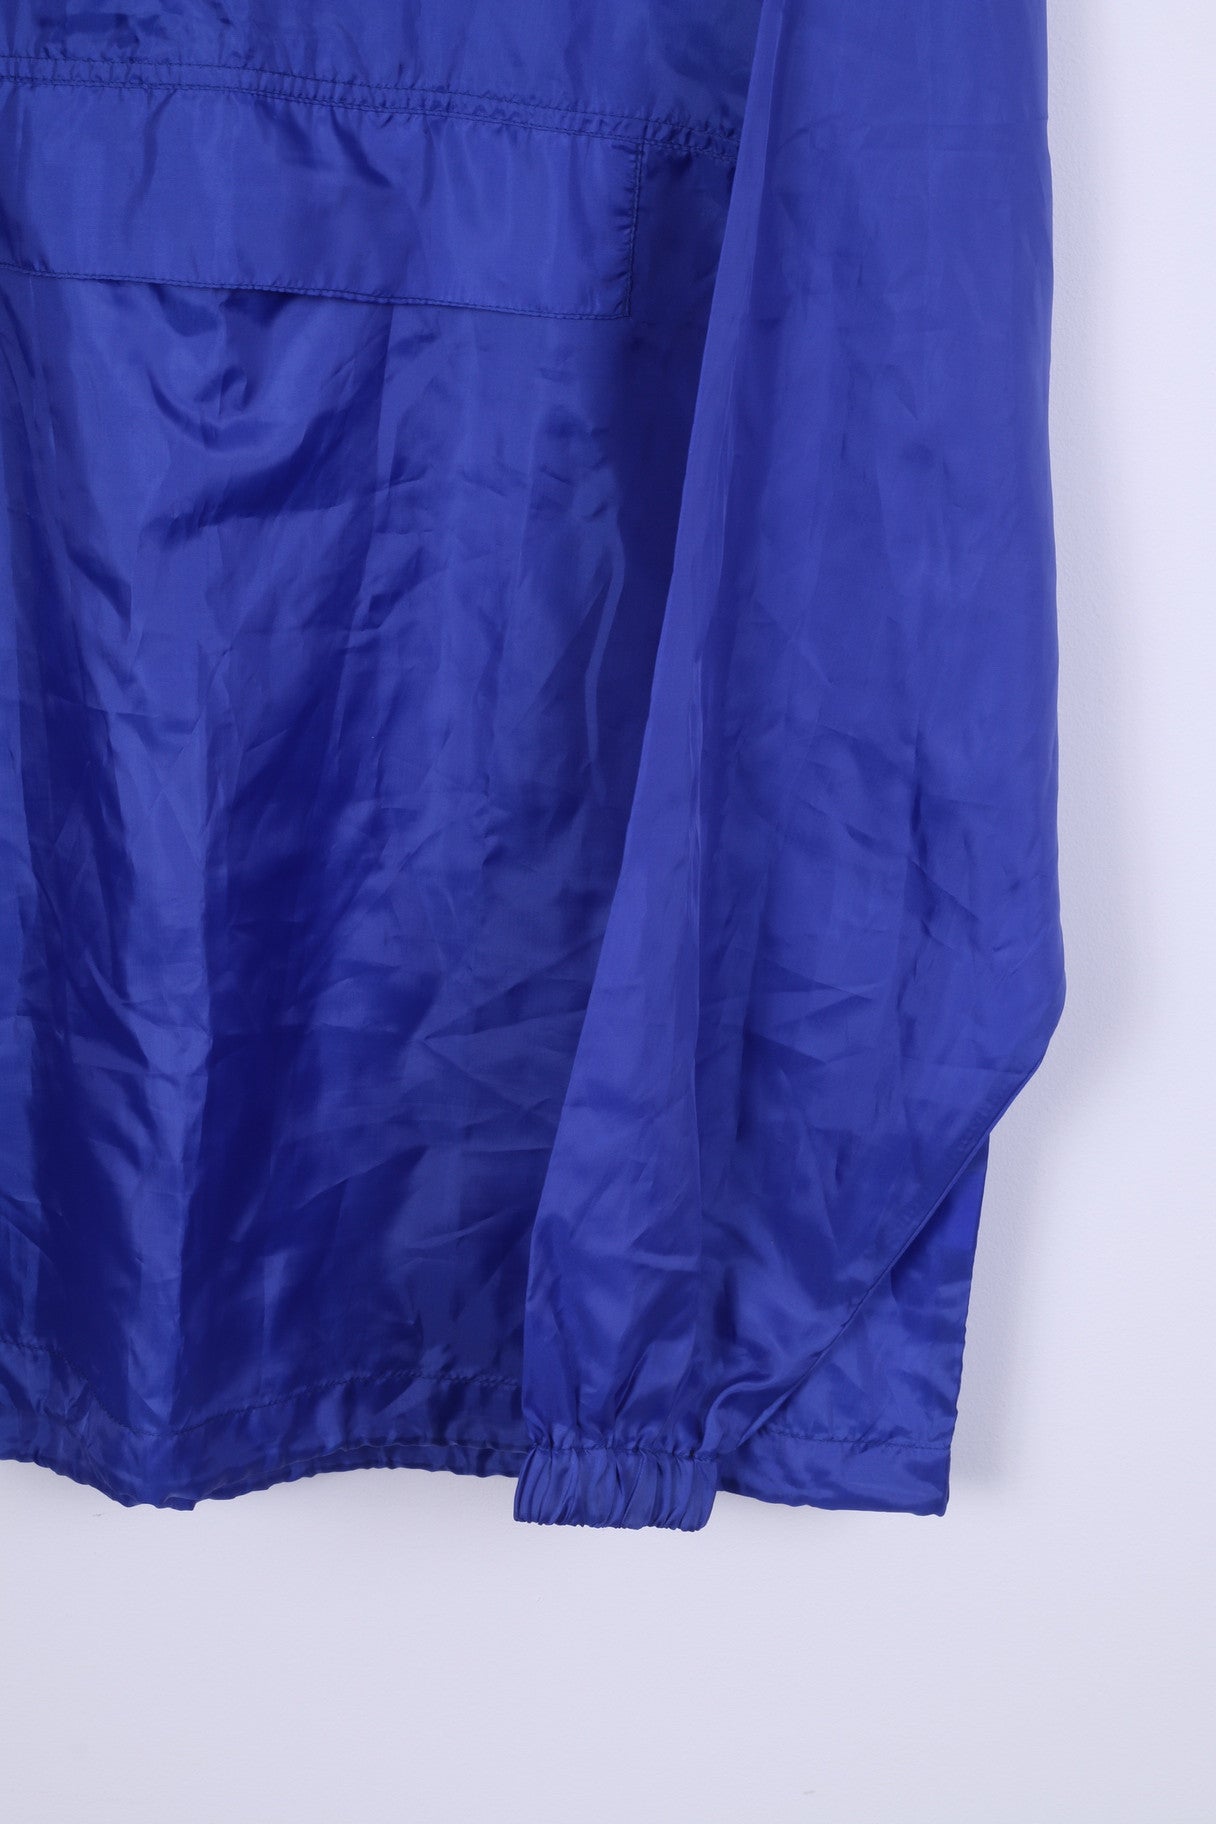 Giacca antipioggia vintage da uomo M blu scuro con cappuccio sportivo